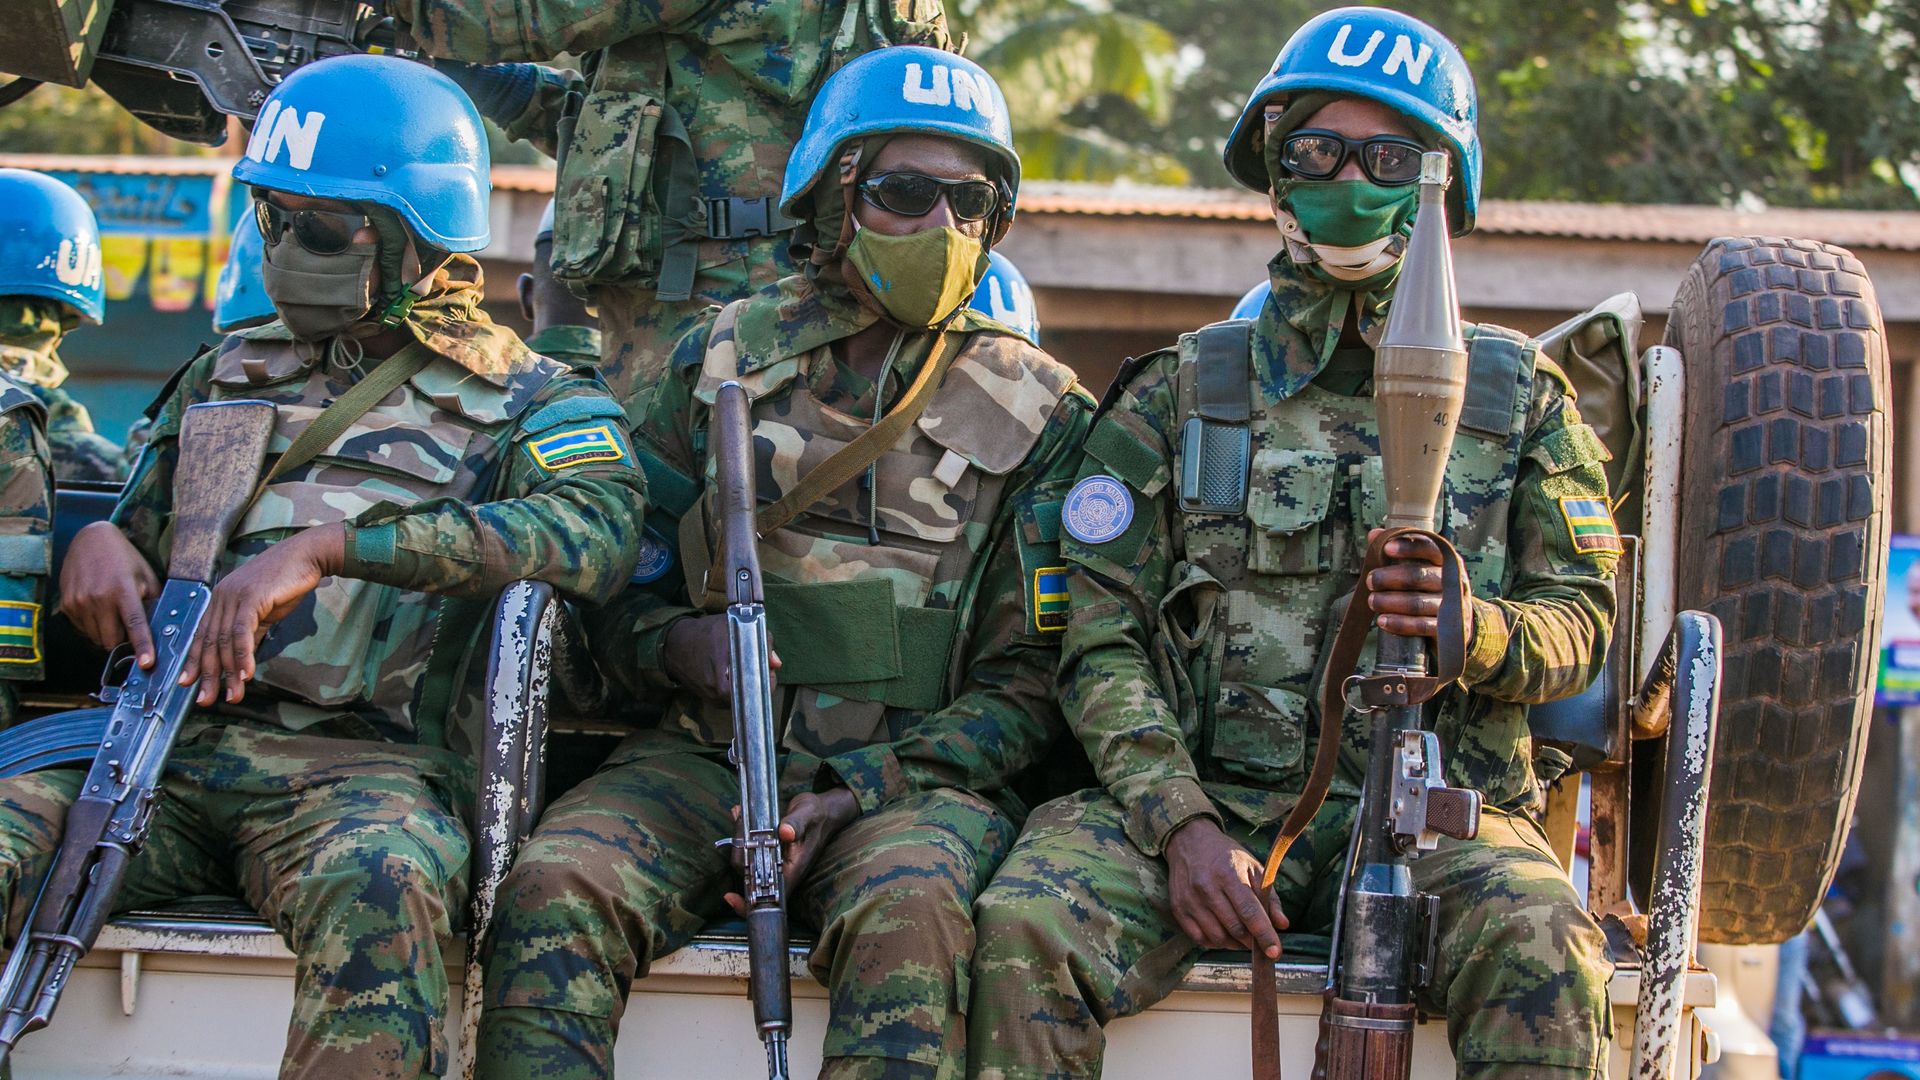 UN peacekeepers in Bangui on Dec. 25.